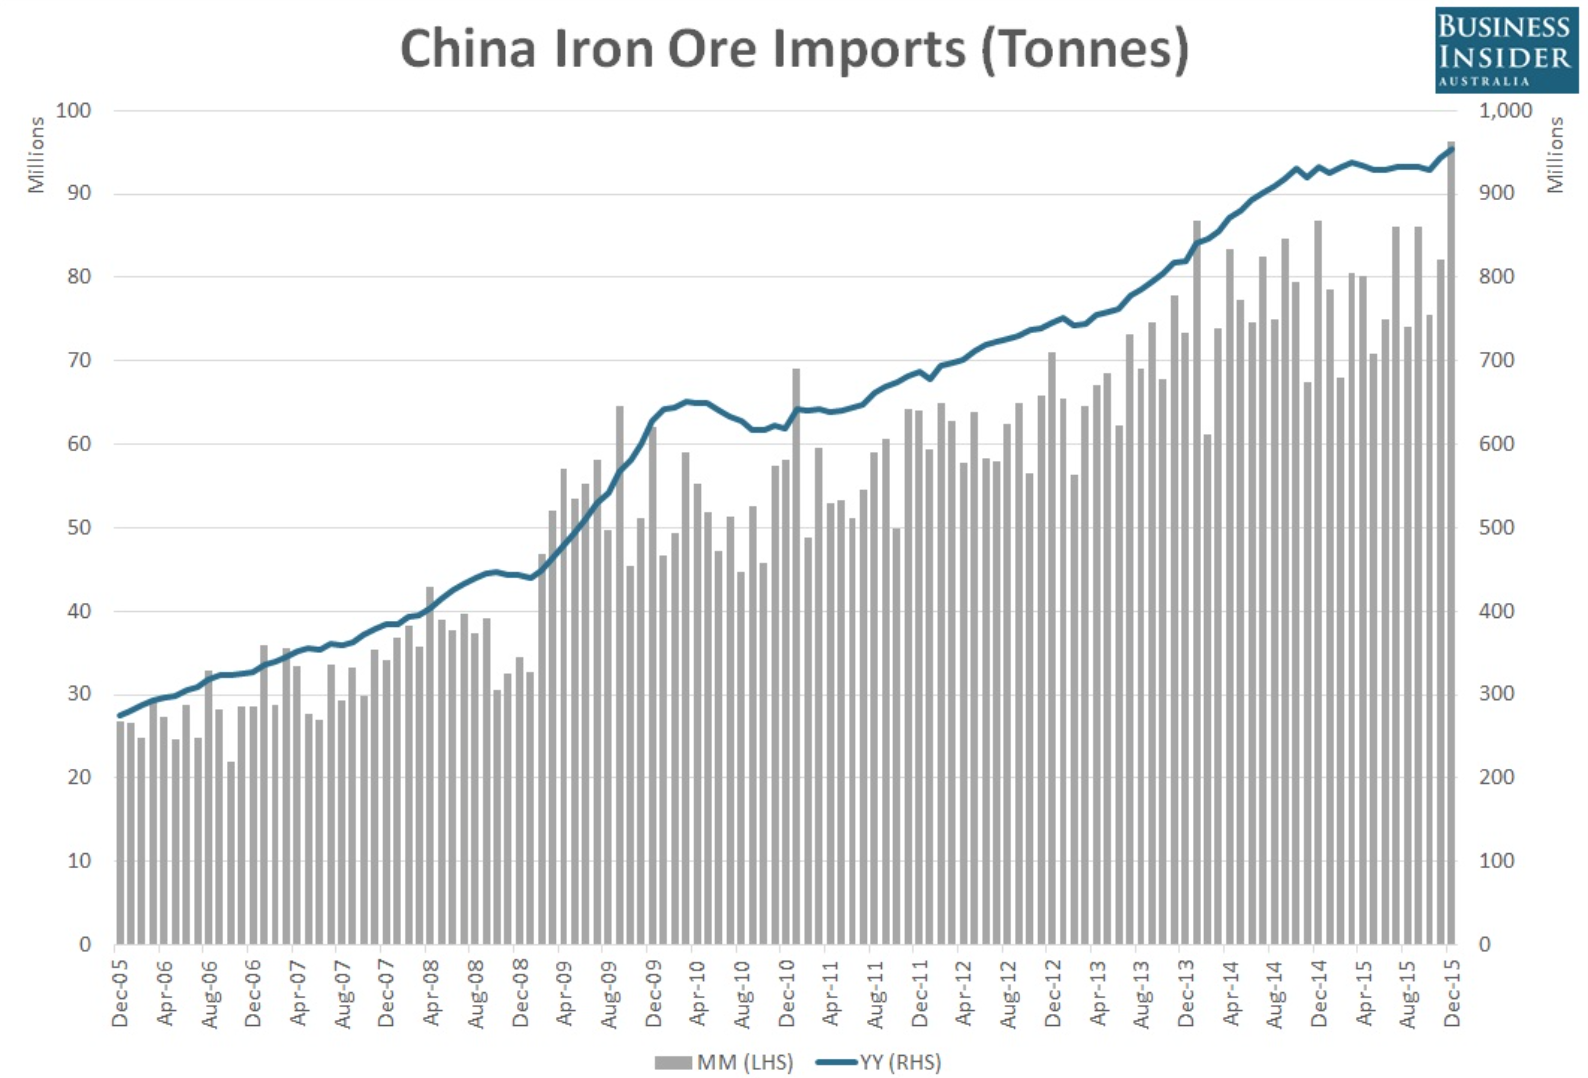 China Iron Ore Imports